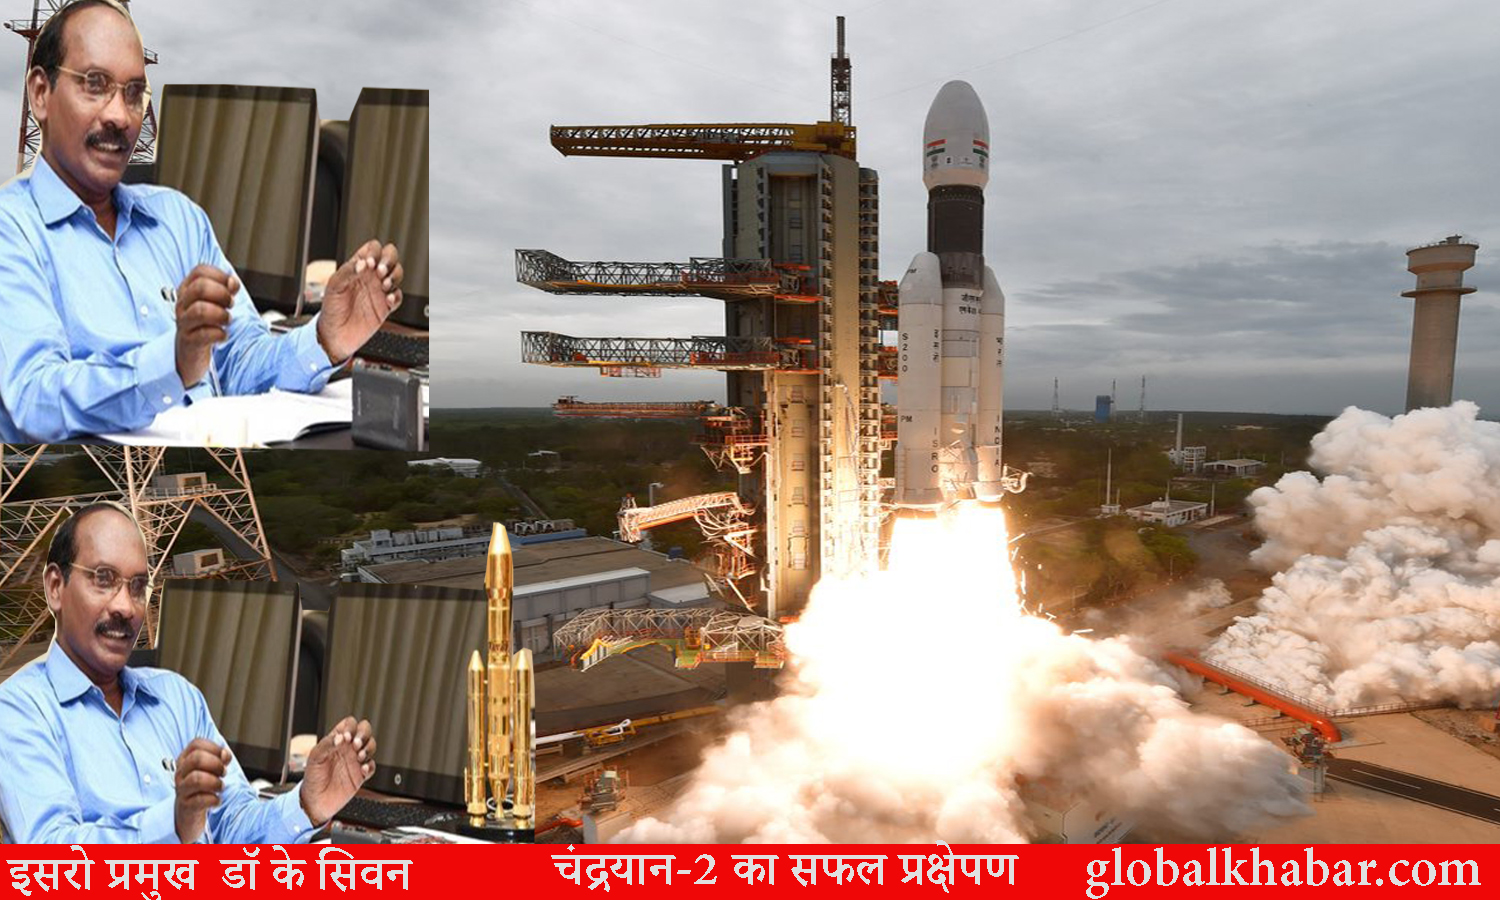 रॉकेट-मैन के नाम से प्रसिद्ध हैं महान वैज्ञानिक इसरो प्रमुख डॉ के सिवन।